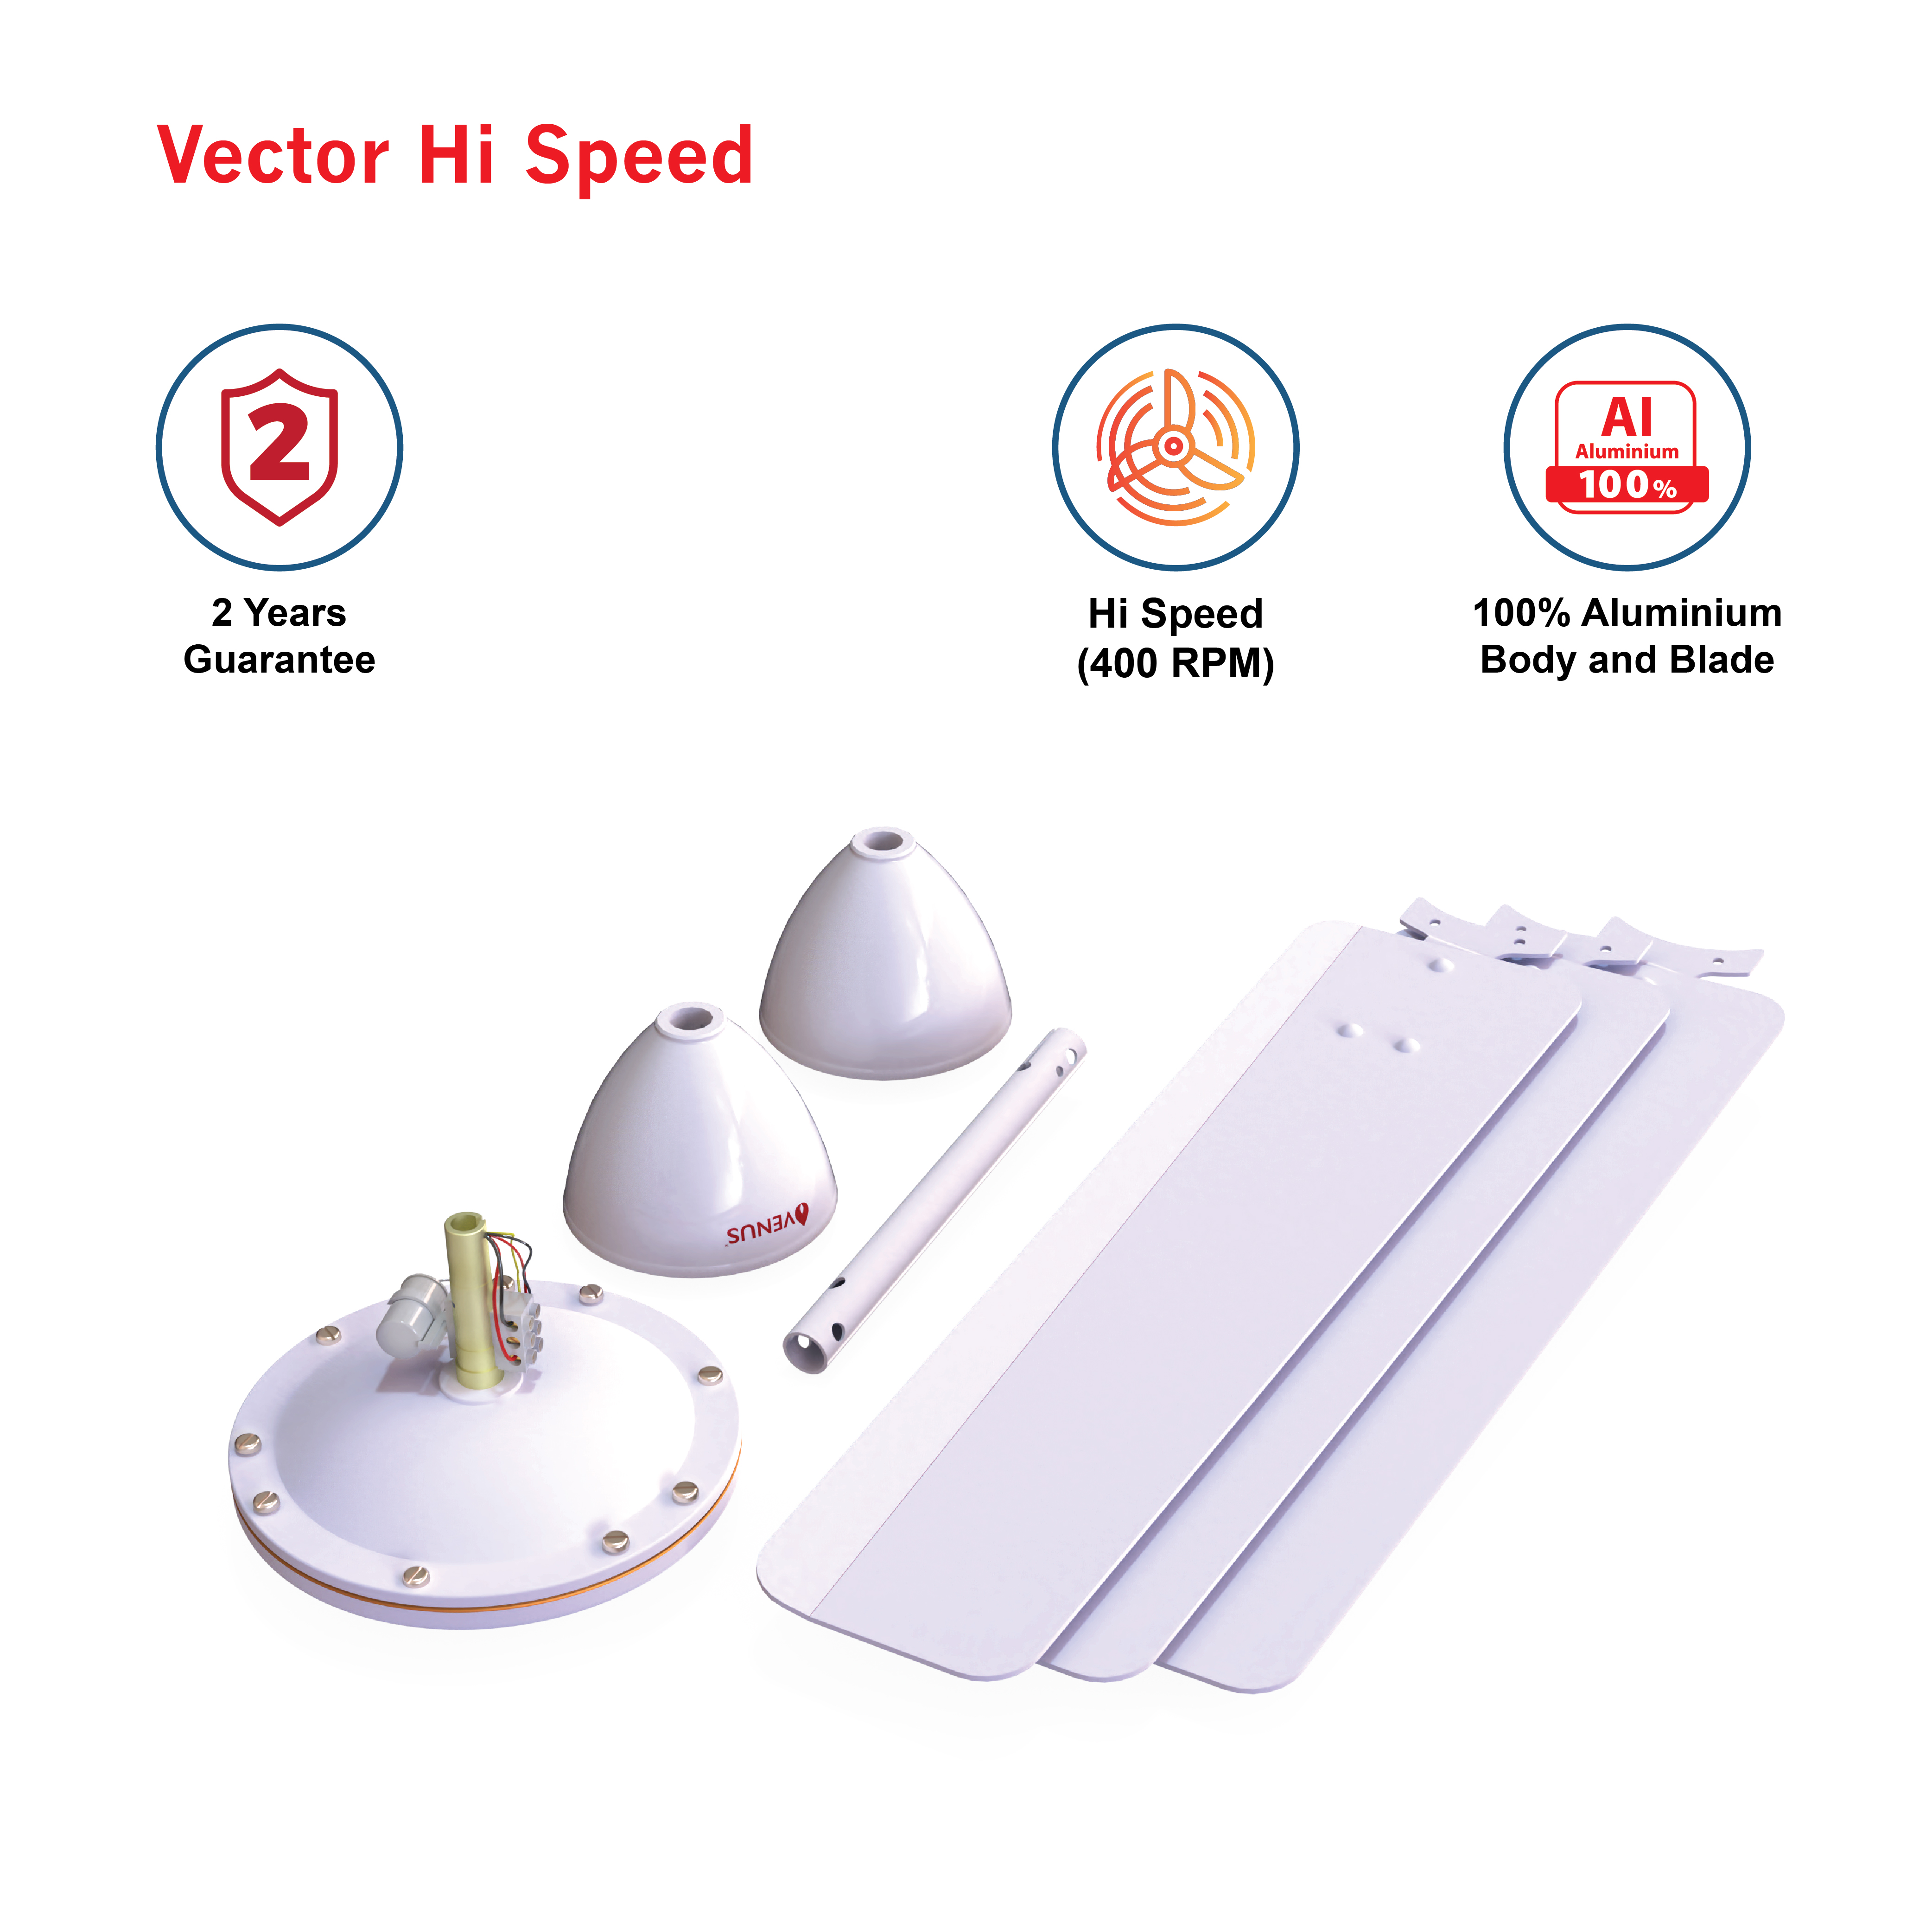 Vector-Hi-speed